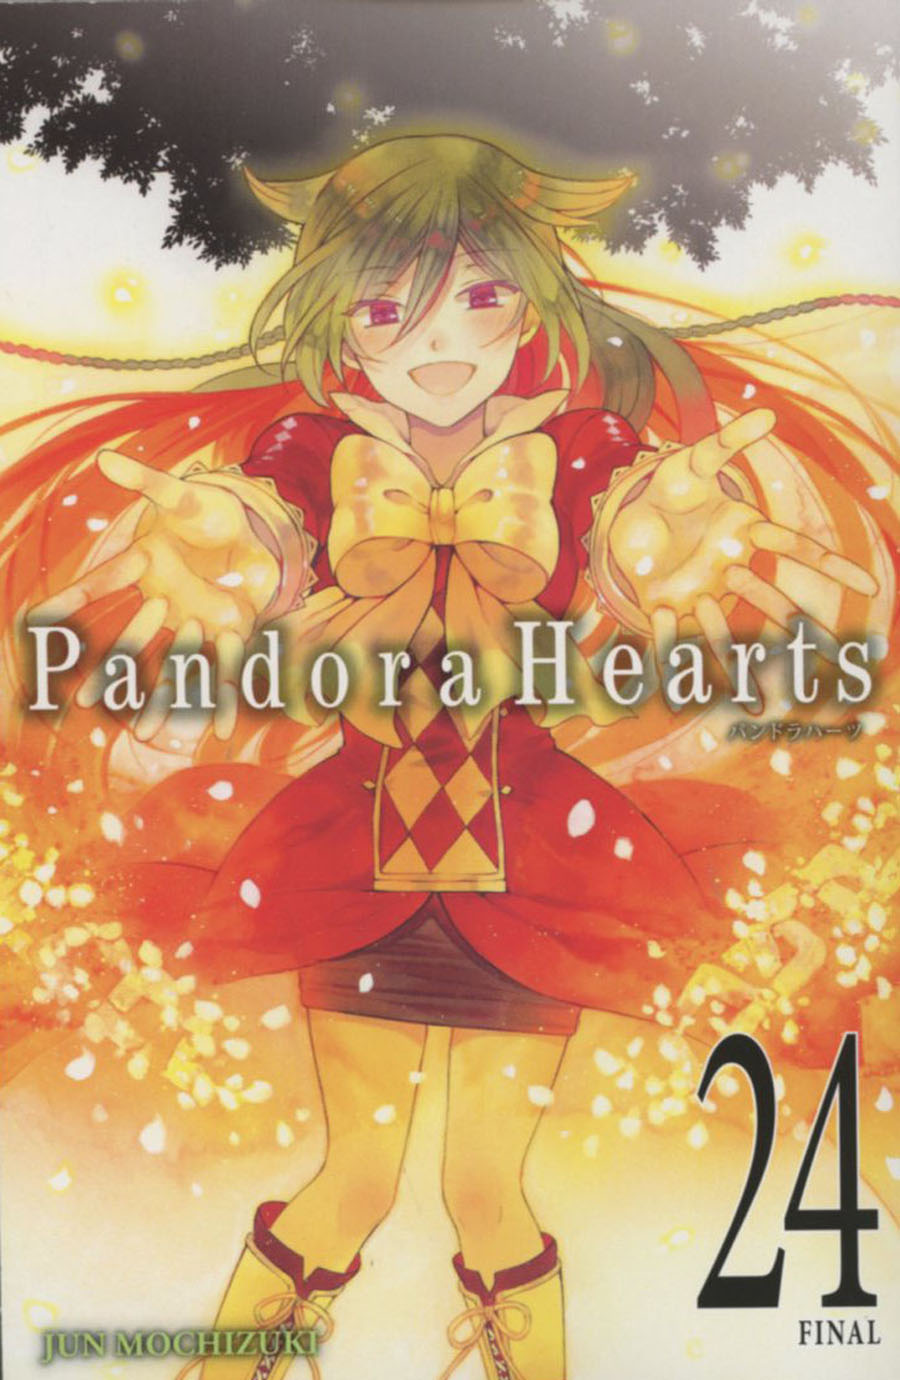 Pandora Hearts Vol 24 GN